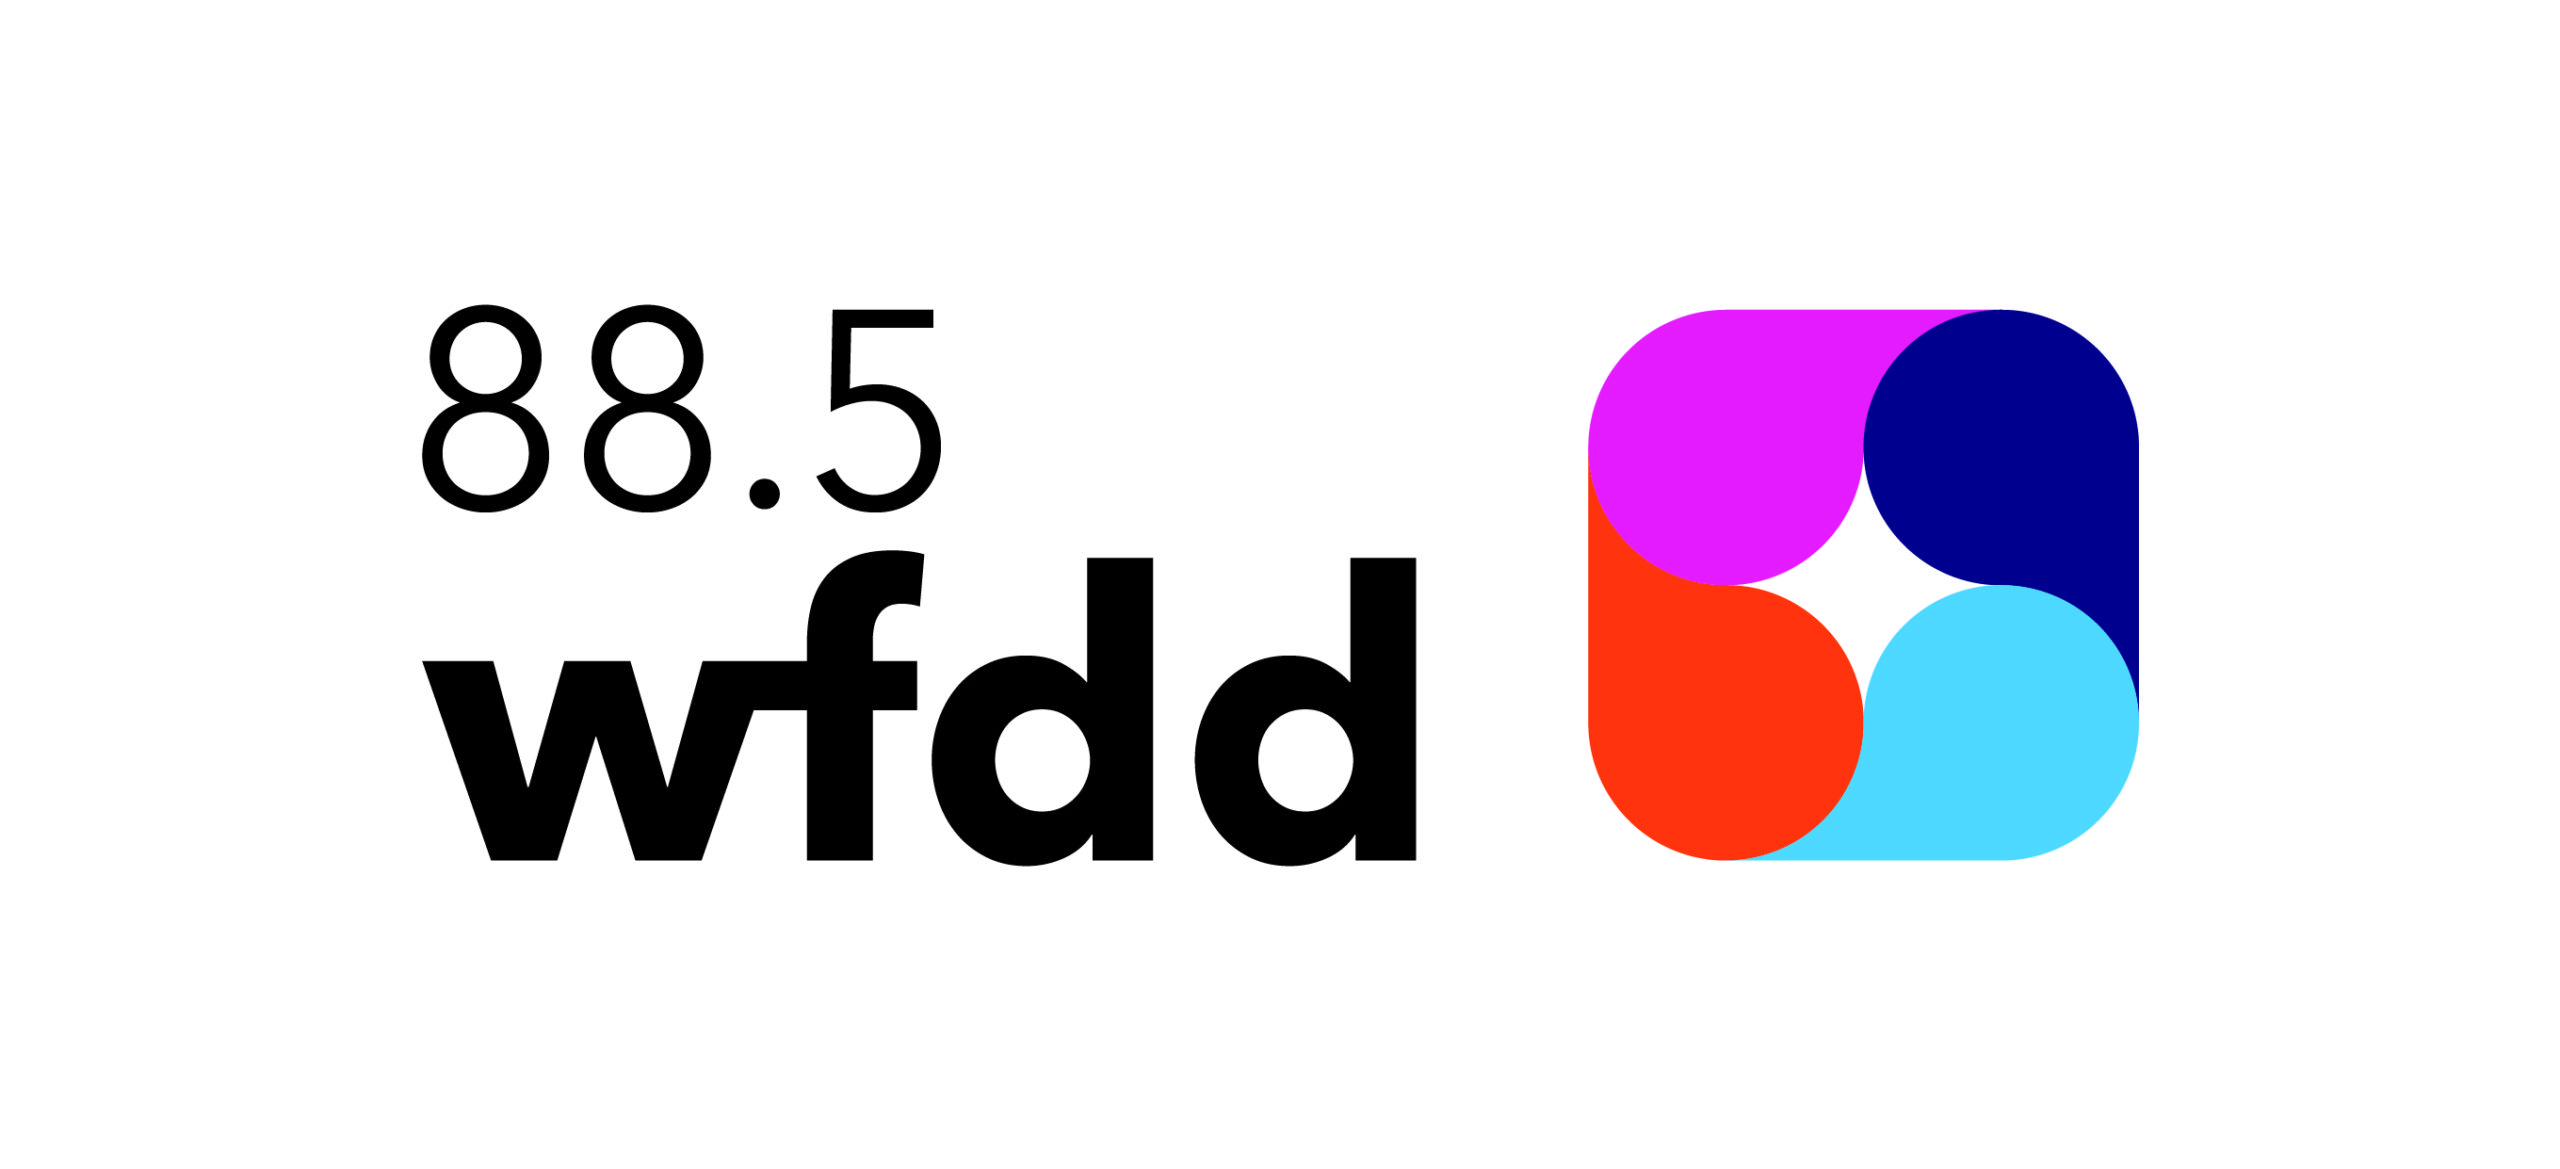 wfdd logo